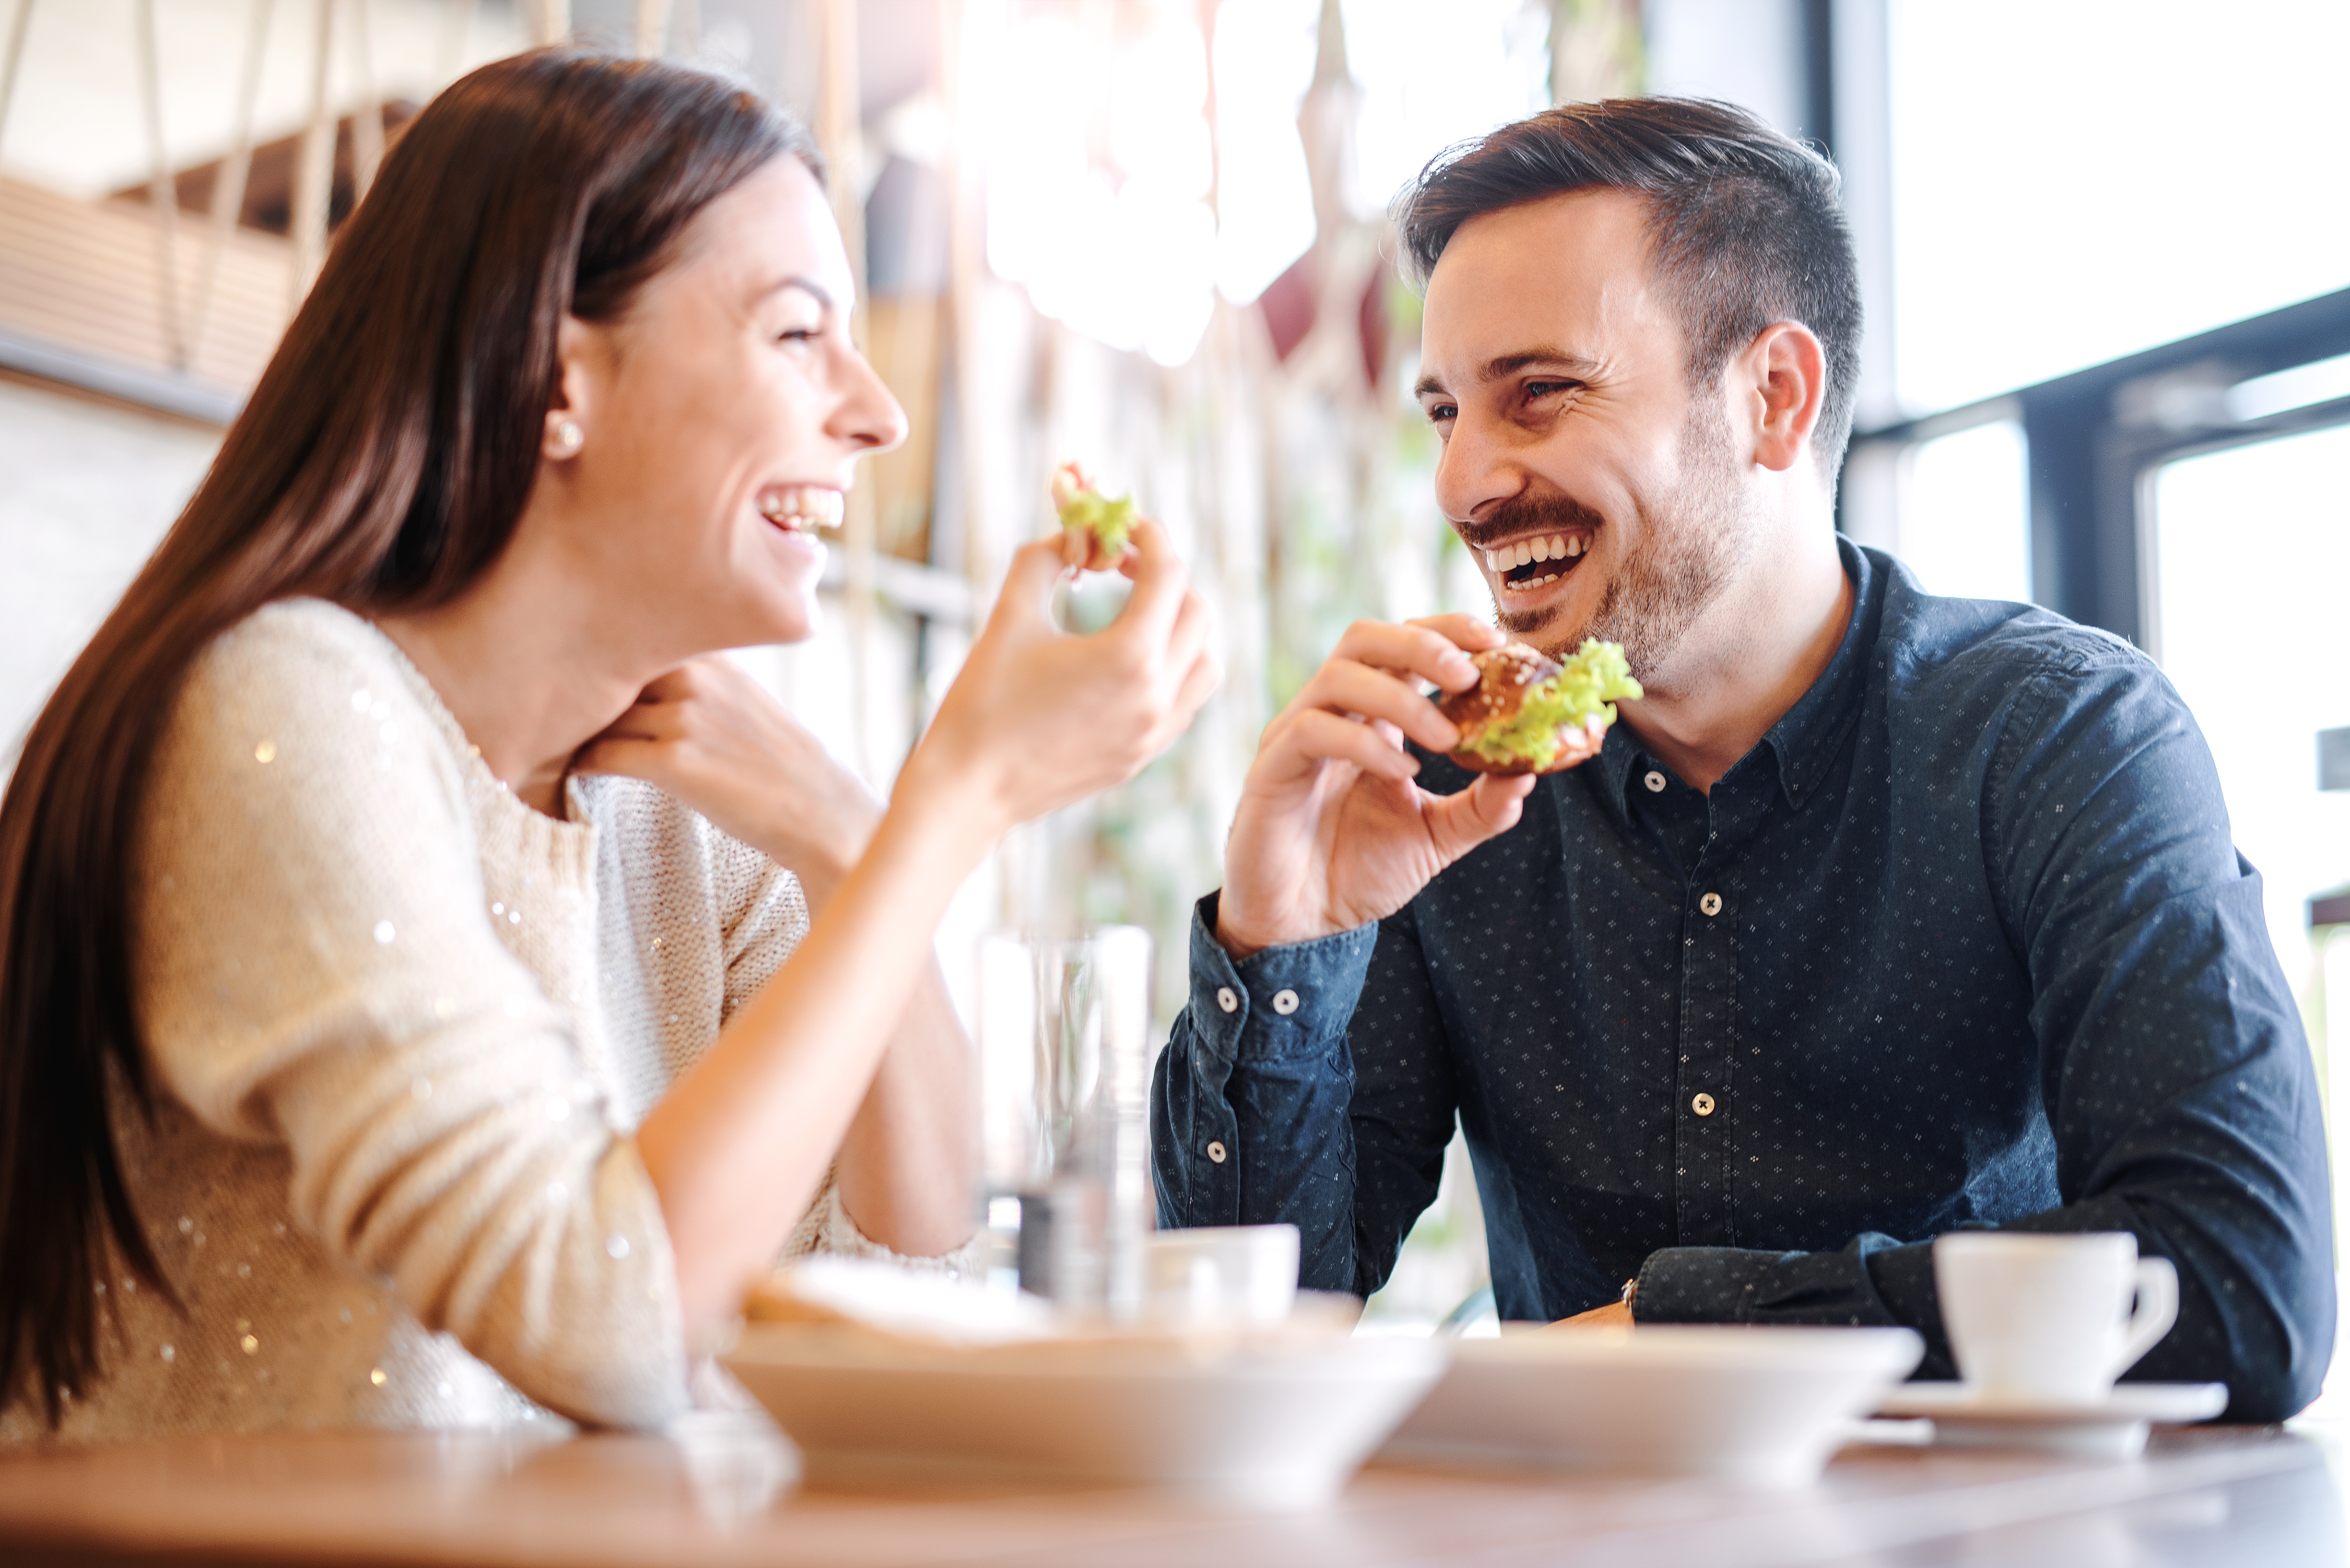 Un couple heureux dégustant de la nourriture dans un café | Source : Shutterstock